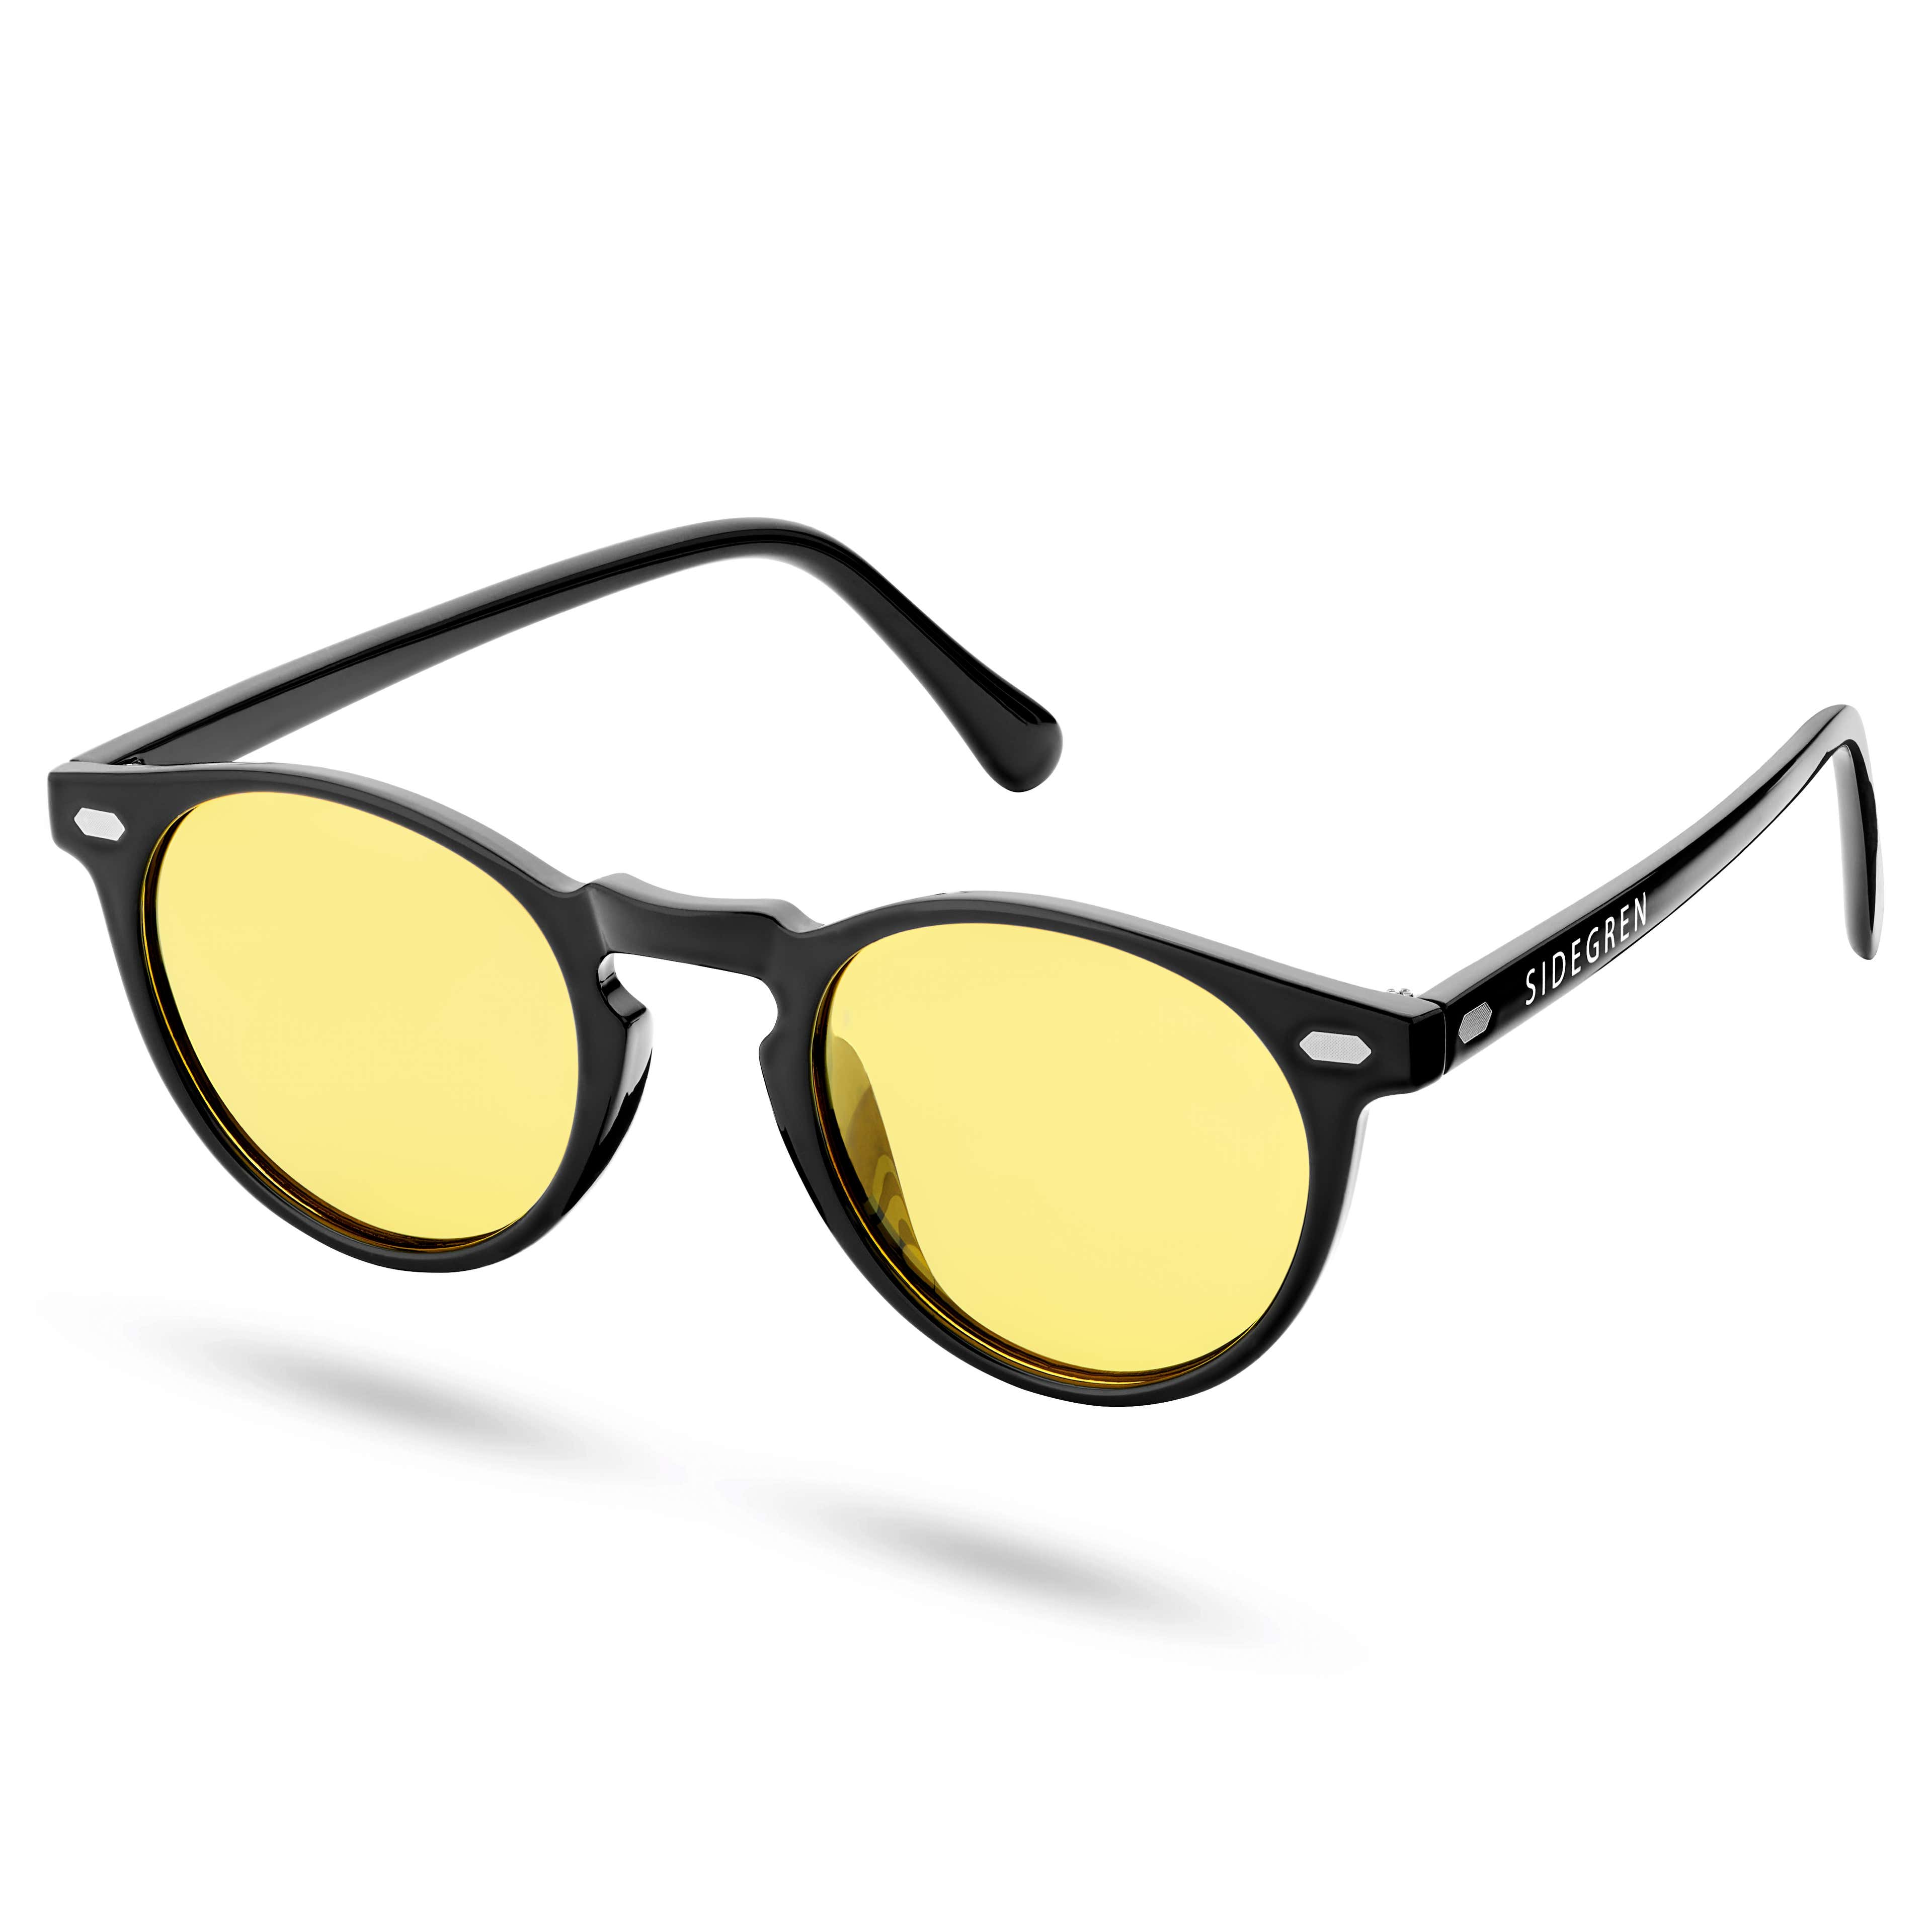 Czarno-żółte okrągłe polaryzacyjne okulary przeciwsłoneczne retro